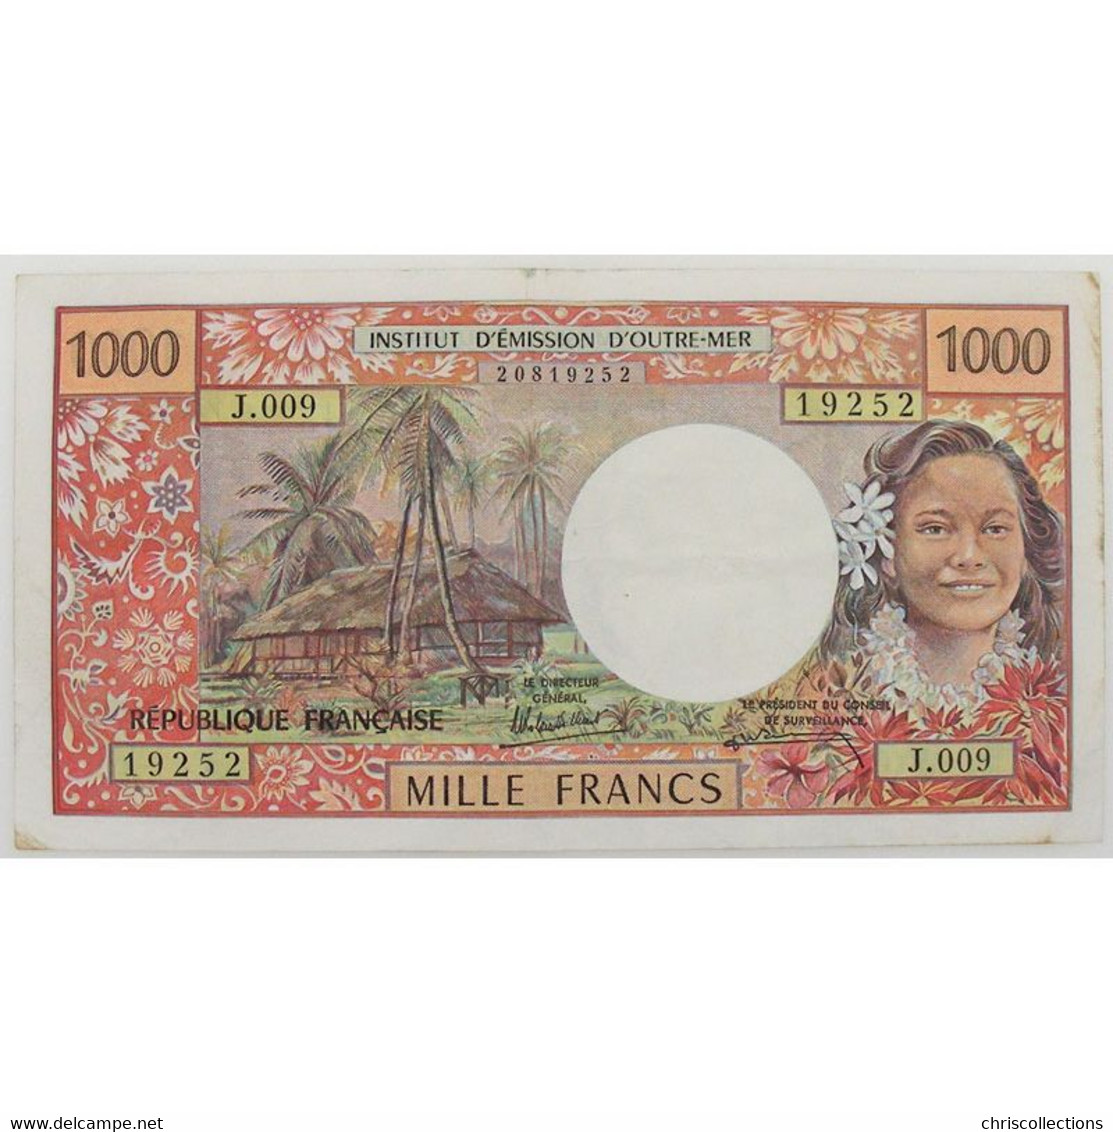 Tahiti, Papeete, 1000 Francs ND, J.009, VF/VF - Papeete (French Polynesia 1914-1985)